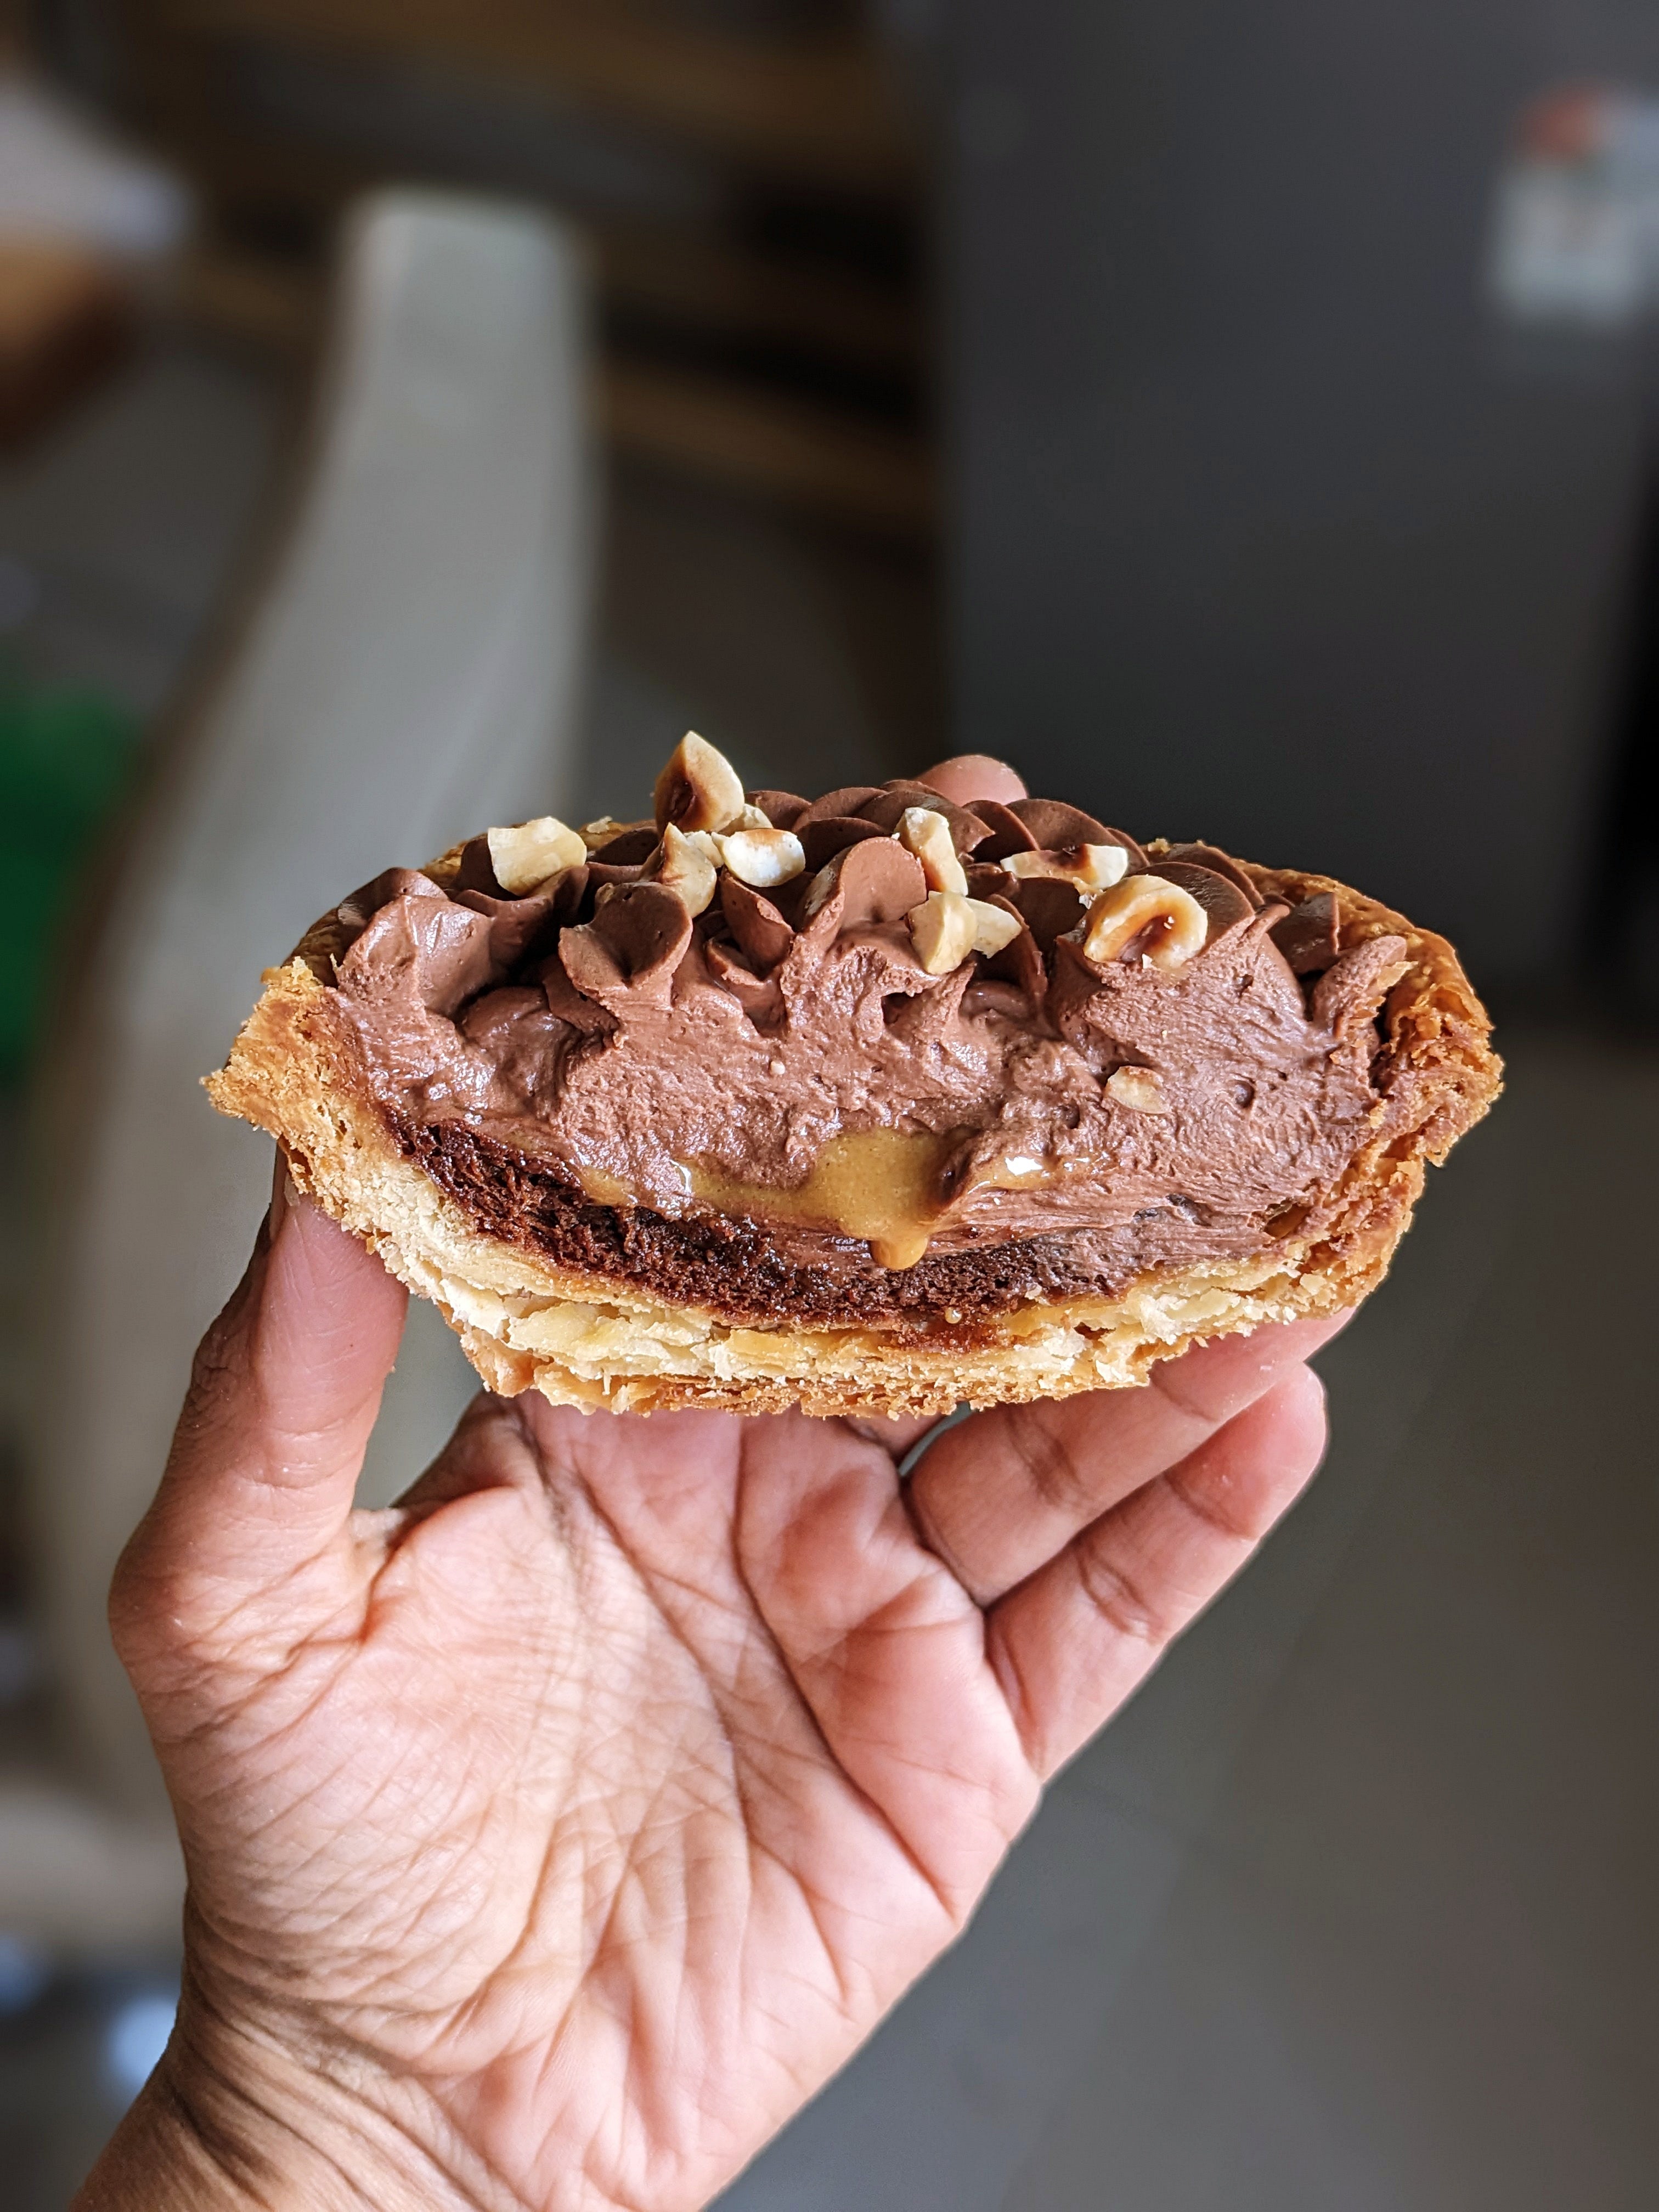 Chocolate Mousse & Hazelnut Praline Pie